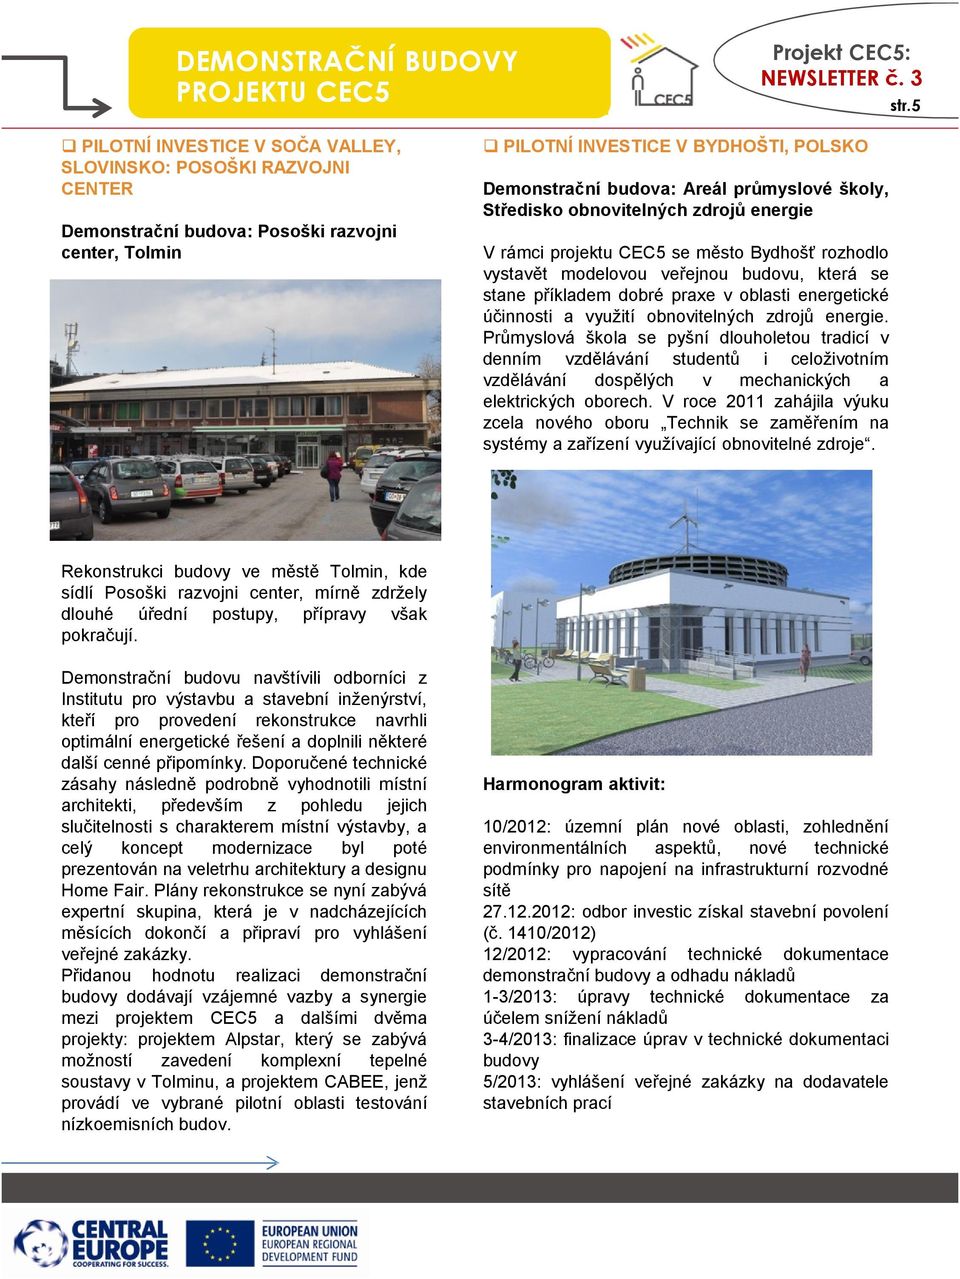 školy, Středisko obnovitelných zdrojů energie V rámci projektu CEC5 se město Bydhošť rozhodlo vystavět modelovou veřejnou budovu, která se stane příkladem dobré praxe v oblasti energetické účinnosti